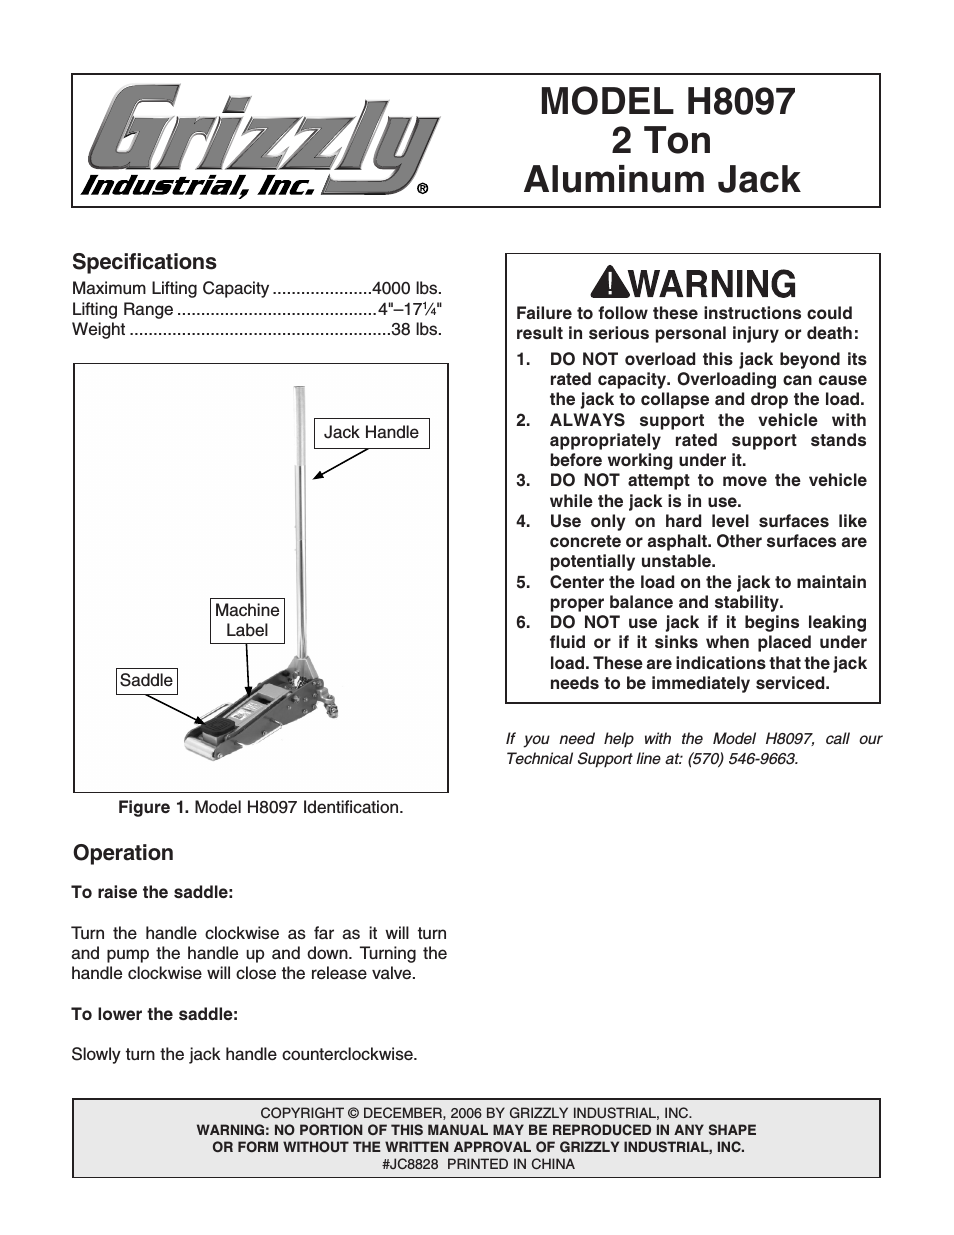 2 Ton Aluminum Jack H8097